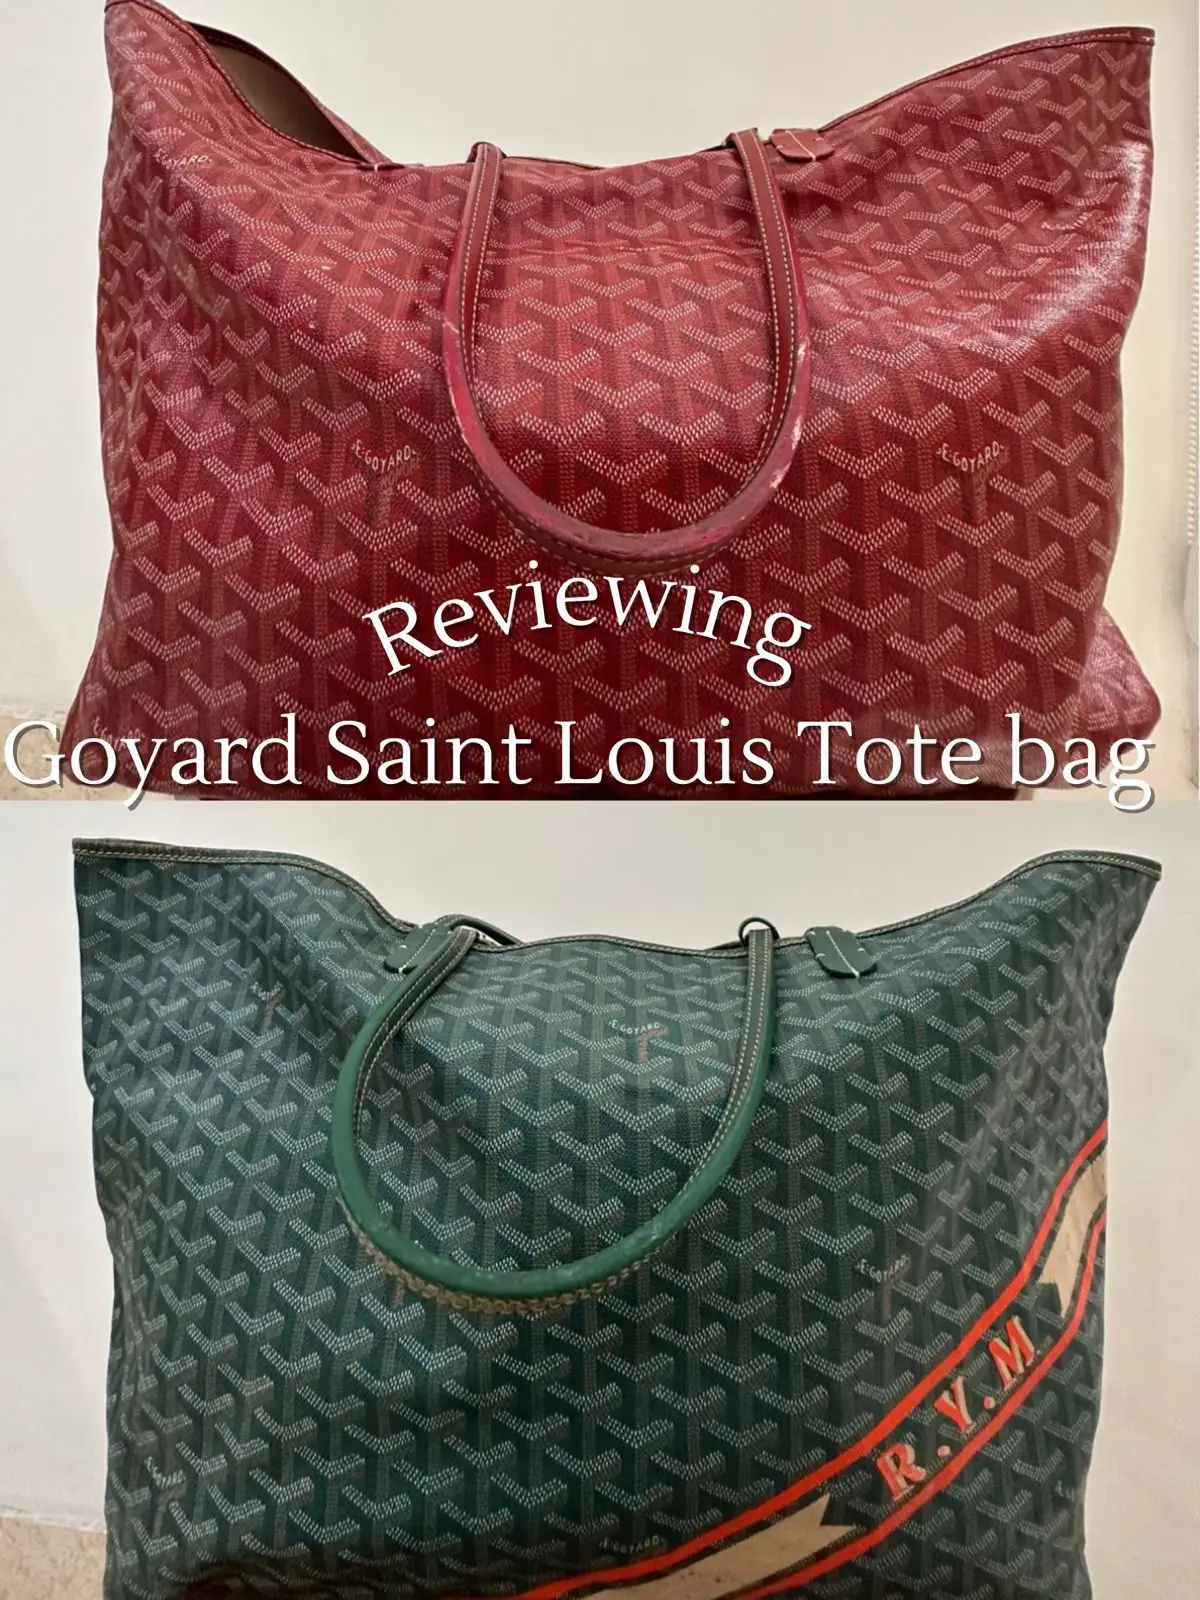 Louis Vuitton vs Goyard: Celebrity Tote Showdown -PurseBop